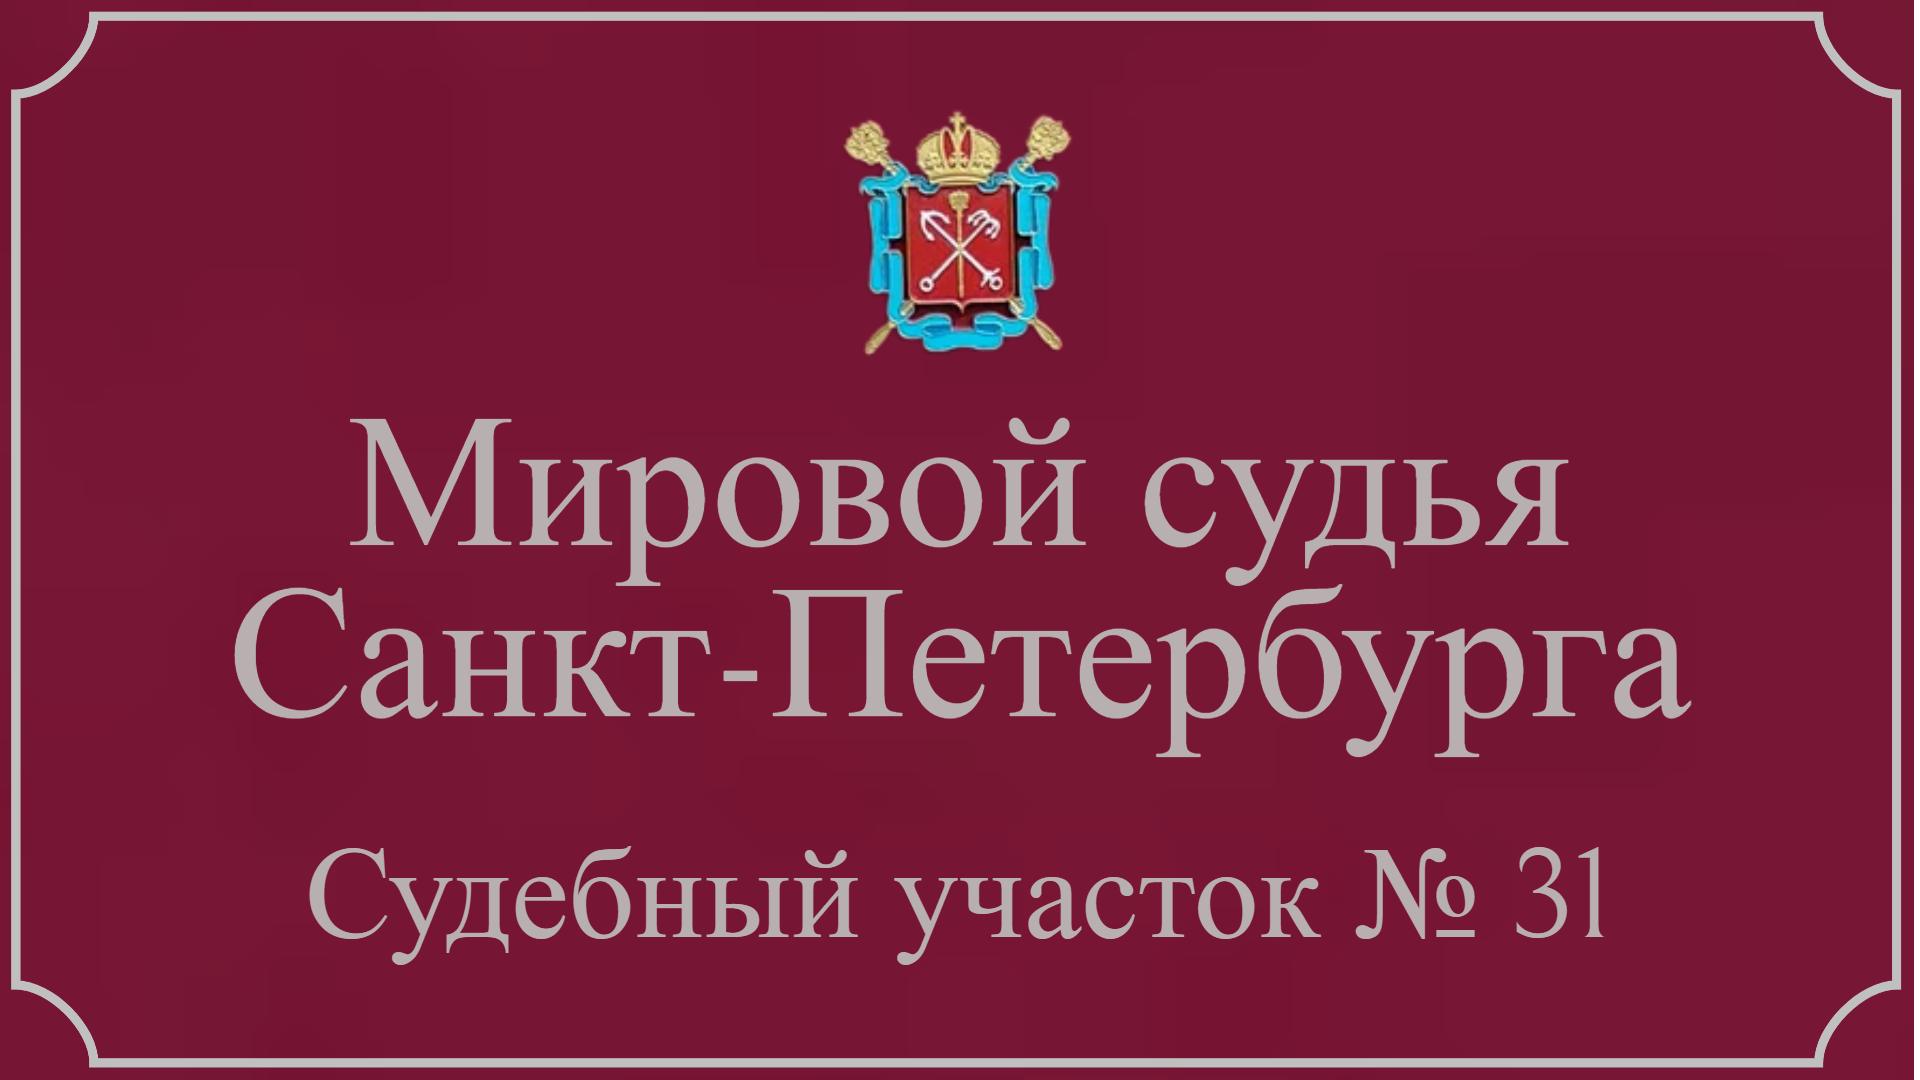 Информация по 31 судебному участку в Санкт-Петербурге.